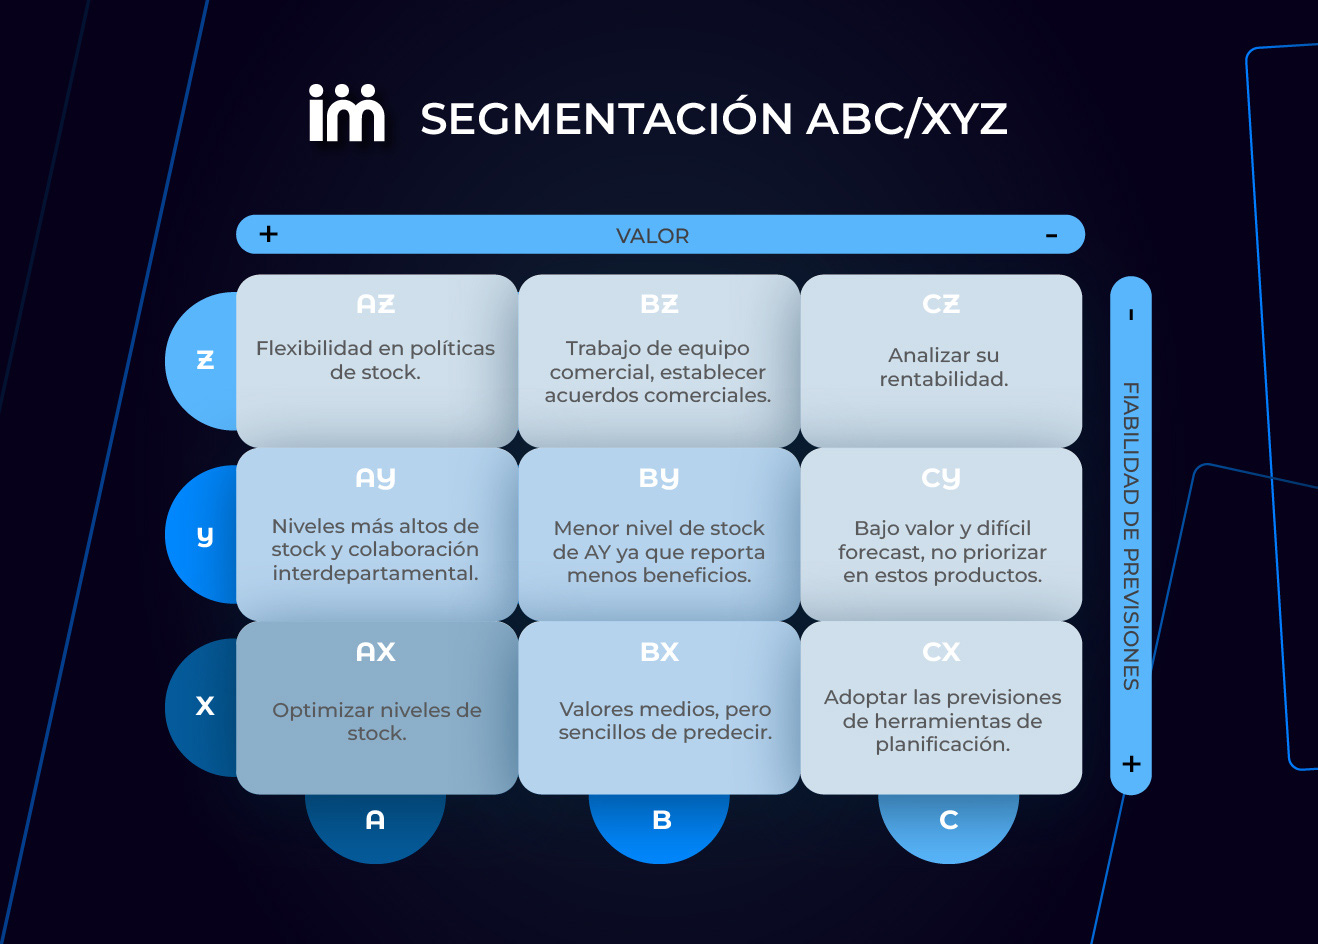 Características de cada grupo dentro de la segmentación ABC-XYZ: